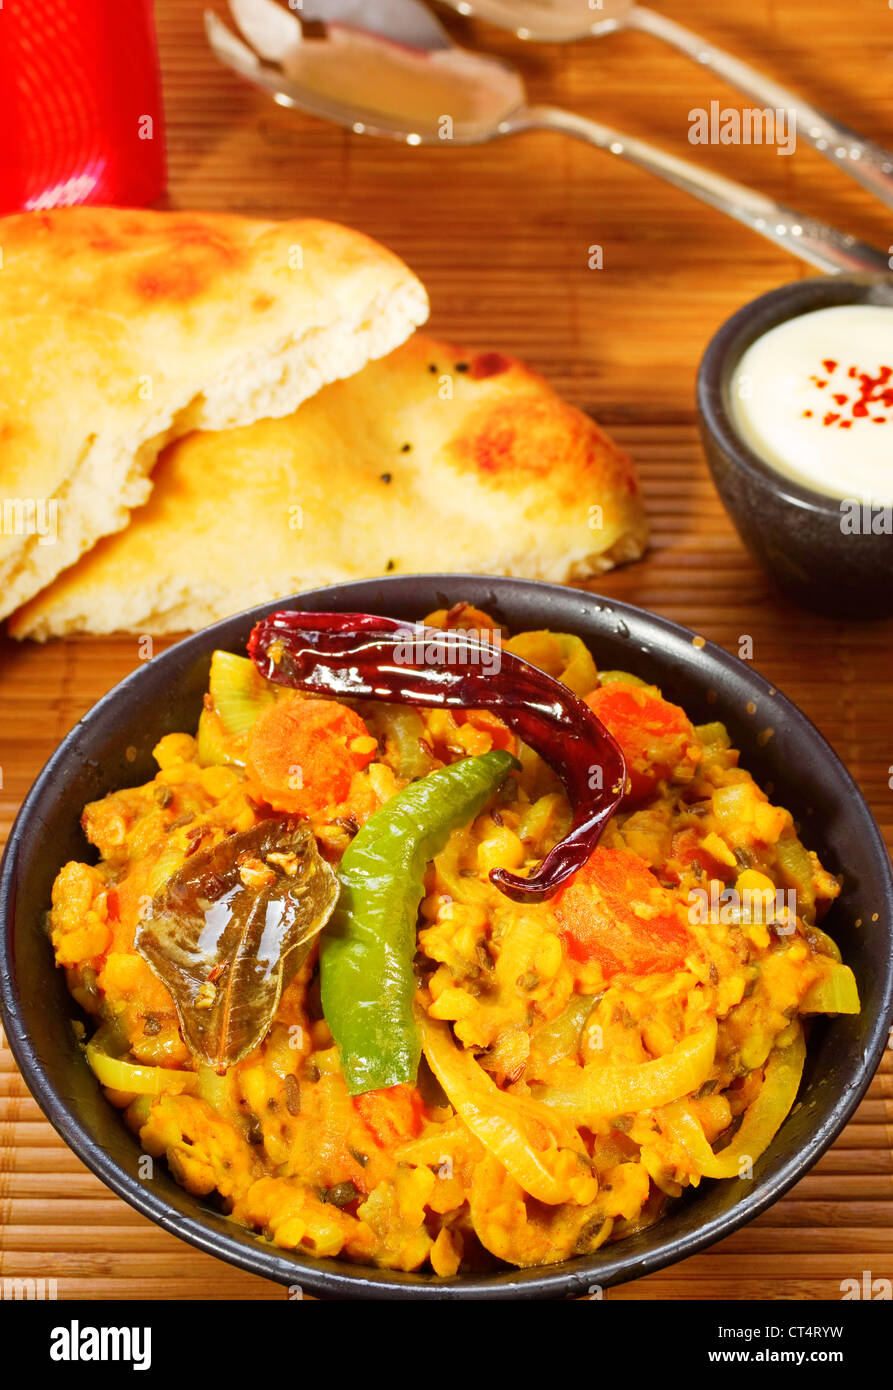 Indische vegetarische Mahlzeit würzige Linsensuppe Dal, mit Chili, Naan-Brot und Joghurt. Stockfoto